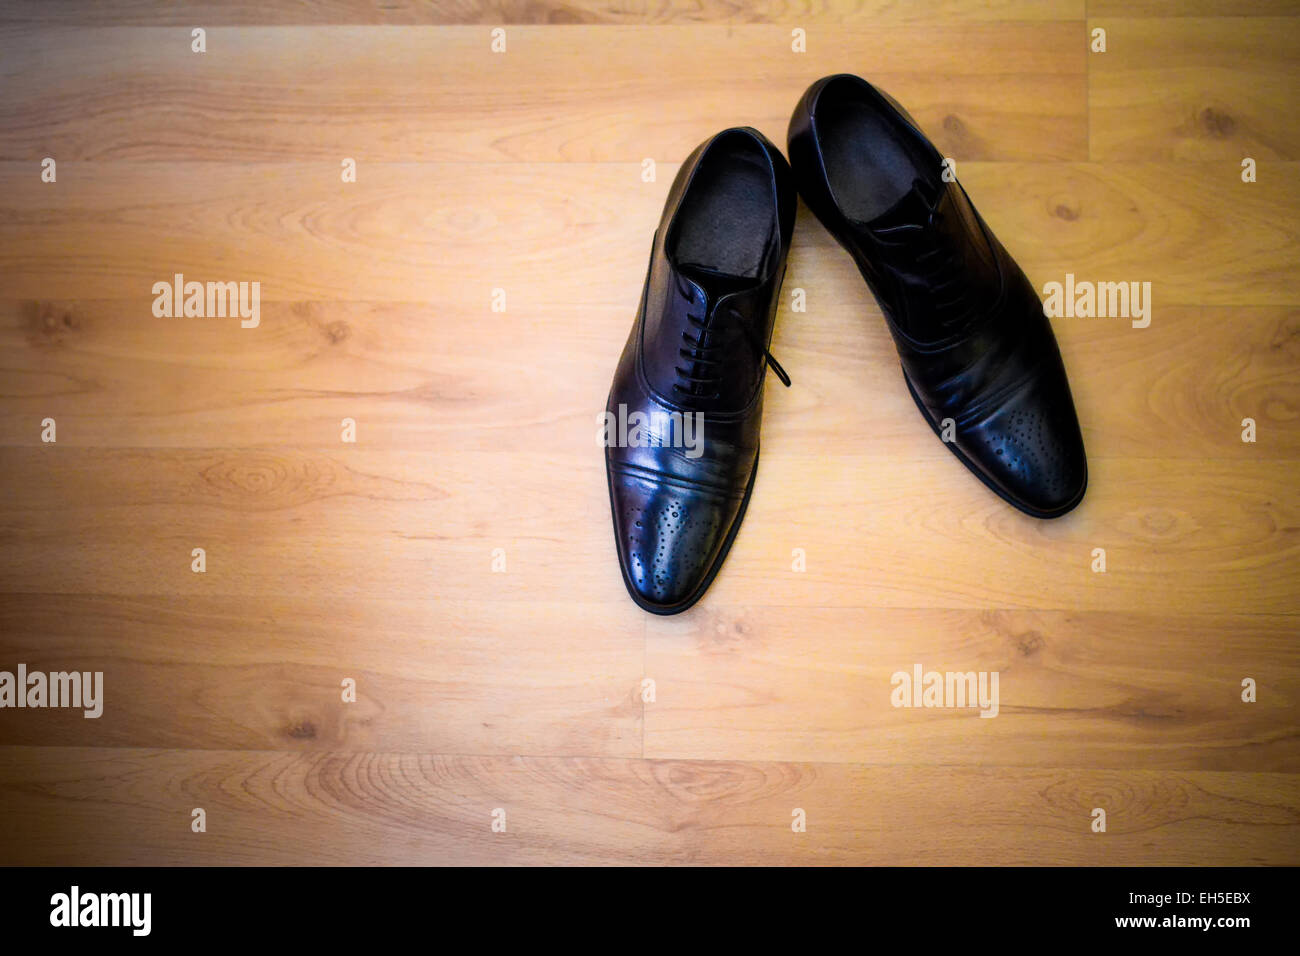 Nero scarpe sposo seduto su pavimenti in legno duro Foto Stock